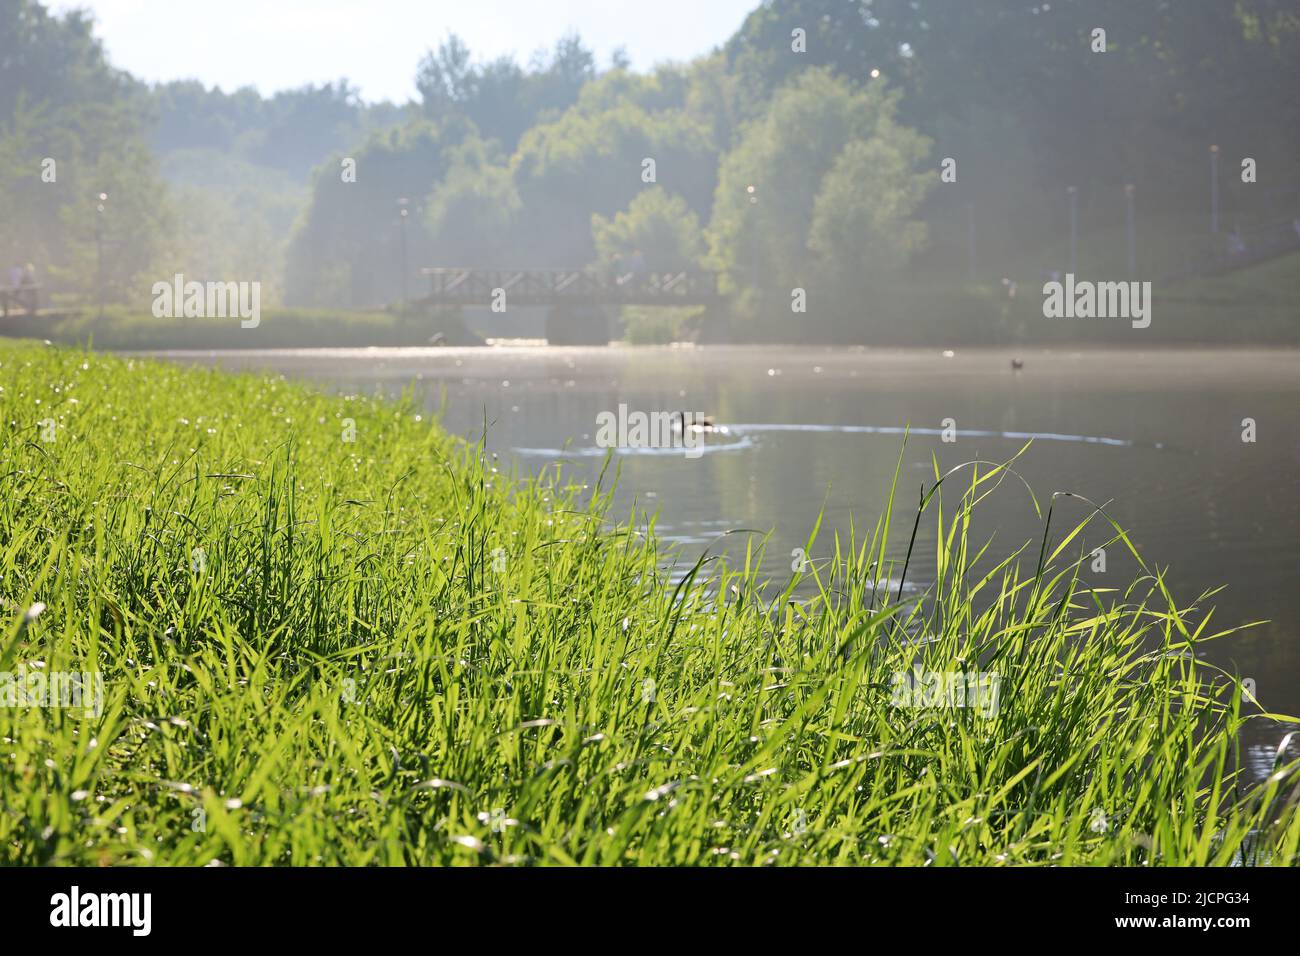 Vista attraverso l'erba al lago con le anatre nuoto nel parco estivo in luce solare. Paesaggio mistico con colori tenui della natura Foto Stock